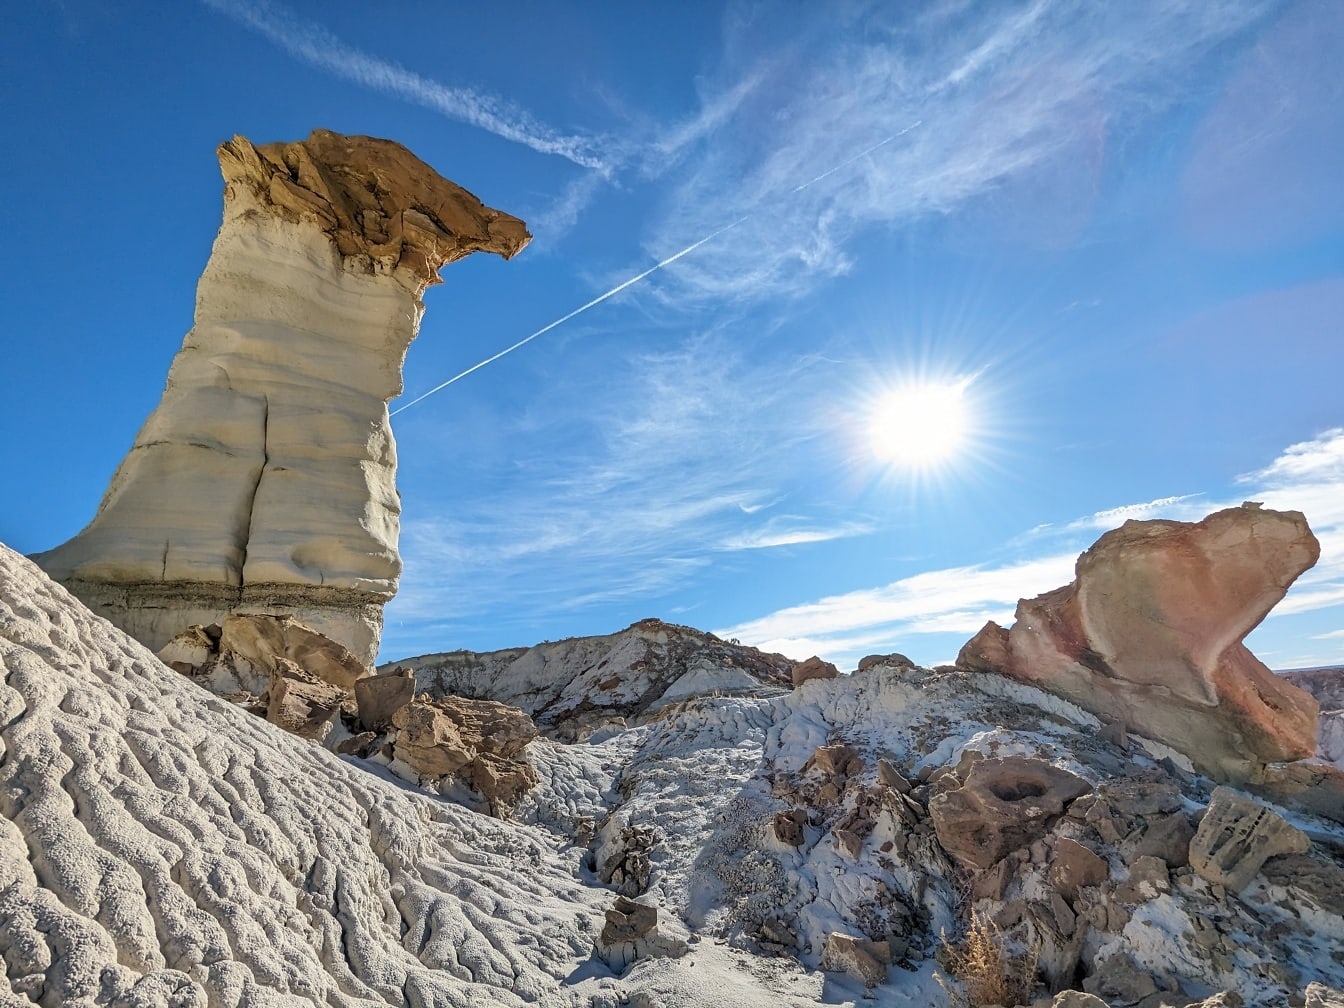 Strålende solskinnsdag med blå himmel over steiner i Sedona-ørkenen i Arizona